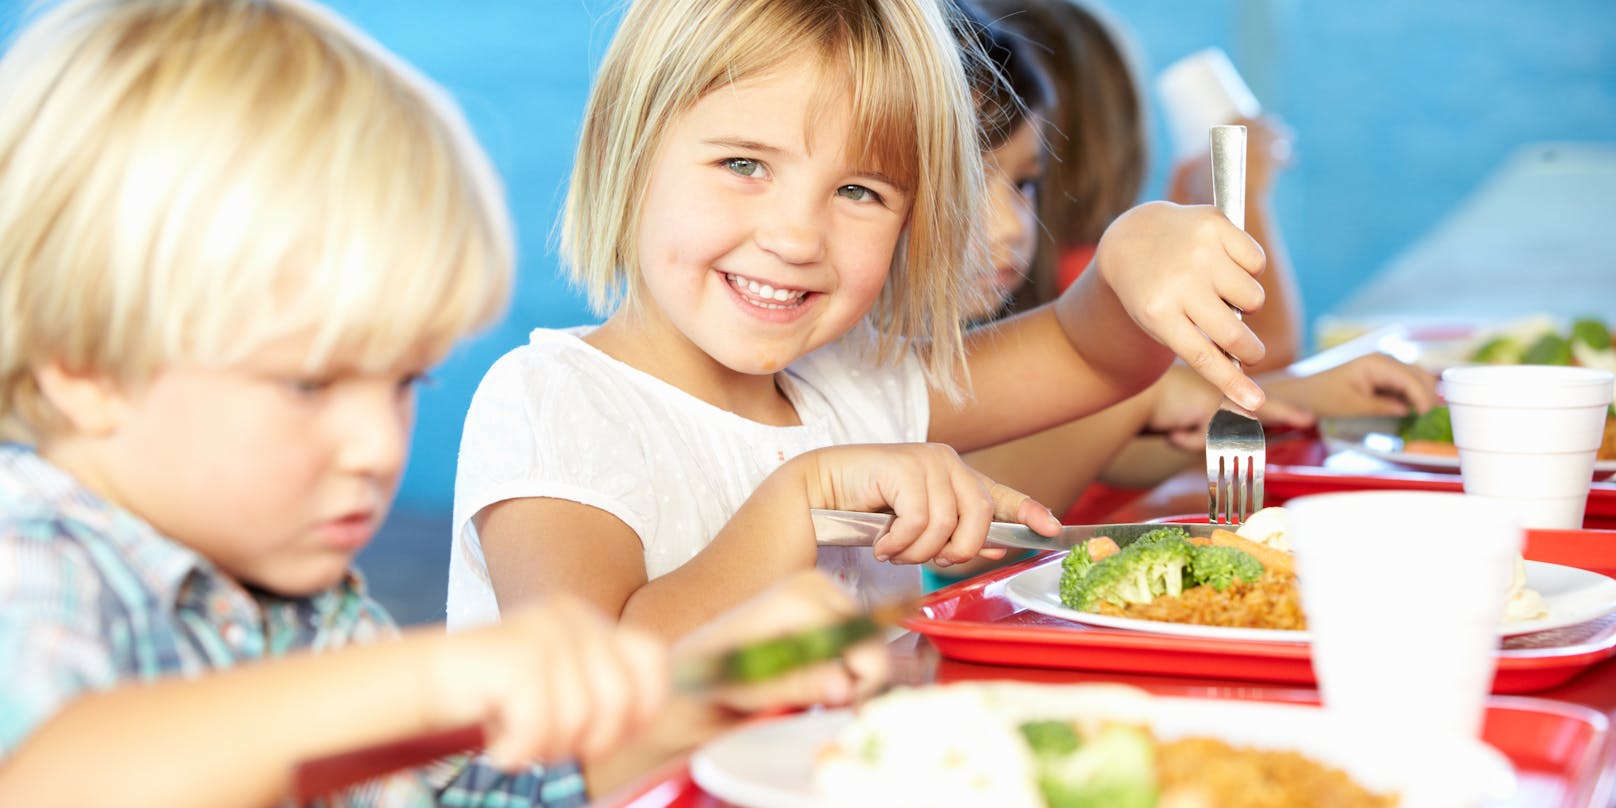 Durch gezielte Maßnahmen soll die Gesundheit der Österreicher verbessert werden, wie z.B. durch ein hochwertigeres Angebot in Schulbuffets und -kantinen für unsere Kinder